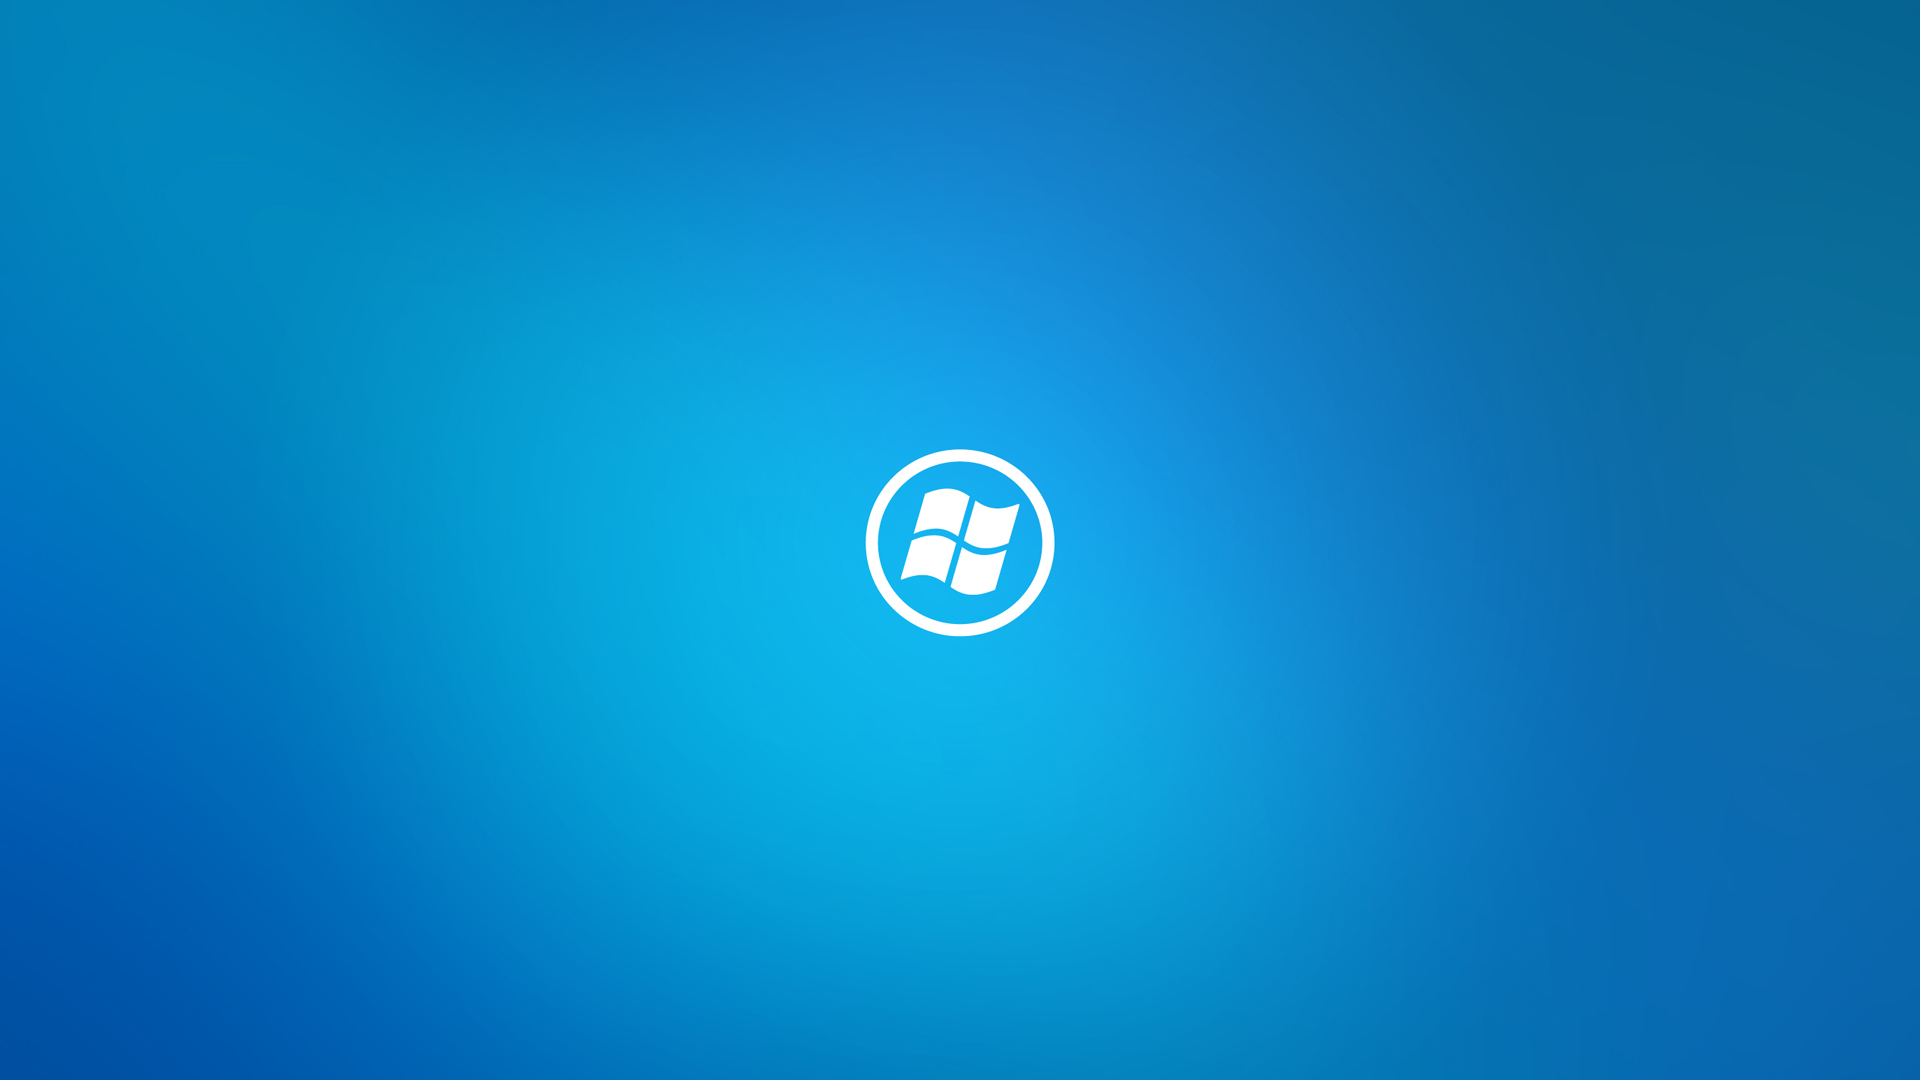 Windows 8 Wallpaper Blue wallpaper   804555